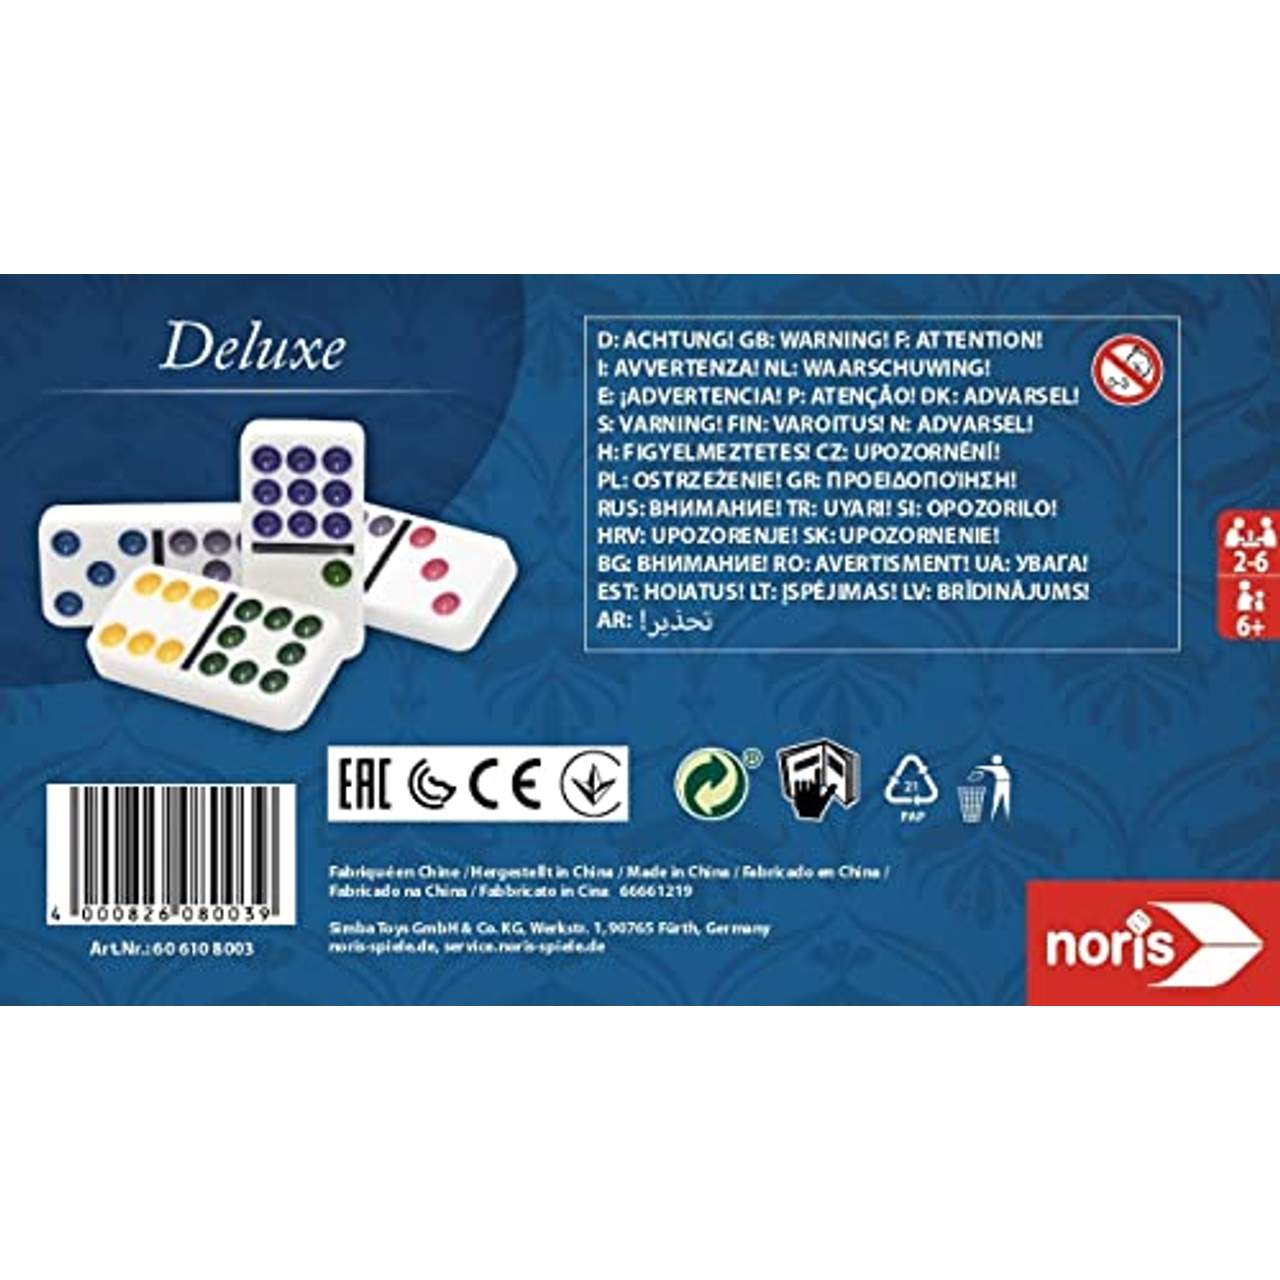 Noris 606108003 606108003-Deluxe Doppel 9 Domino